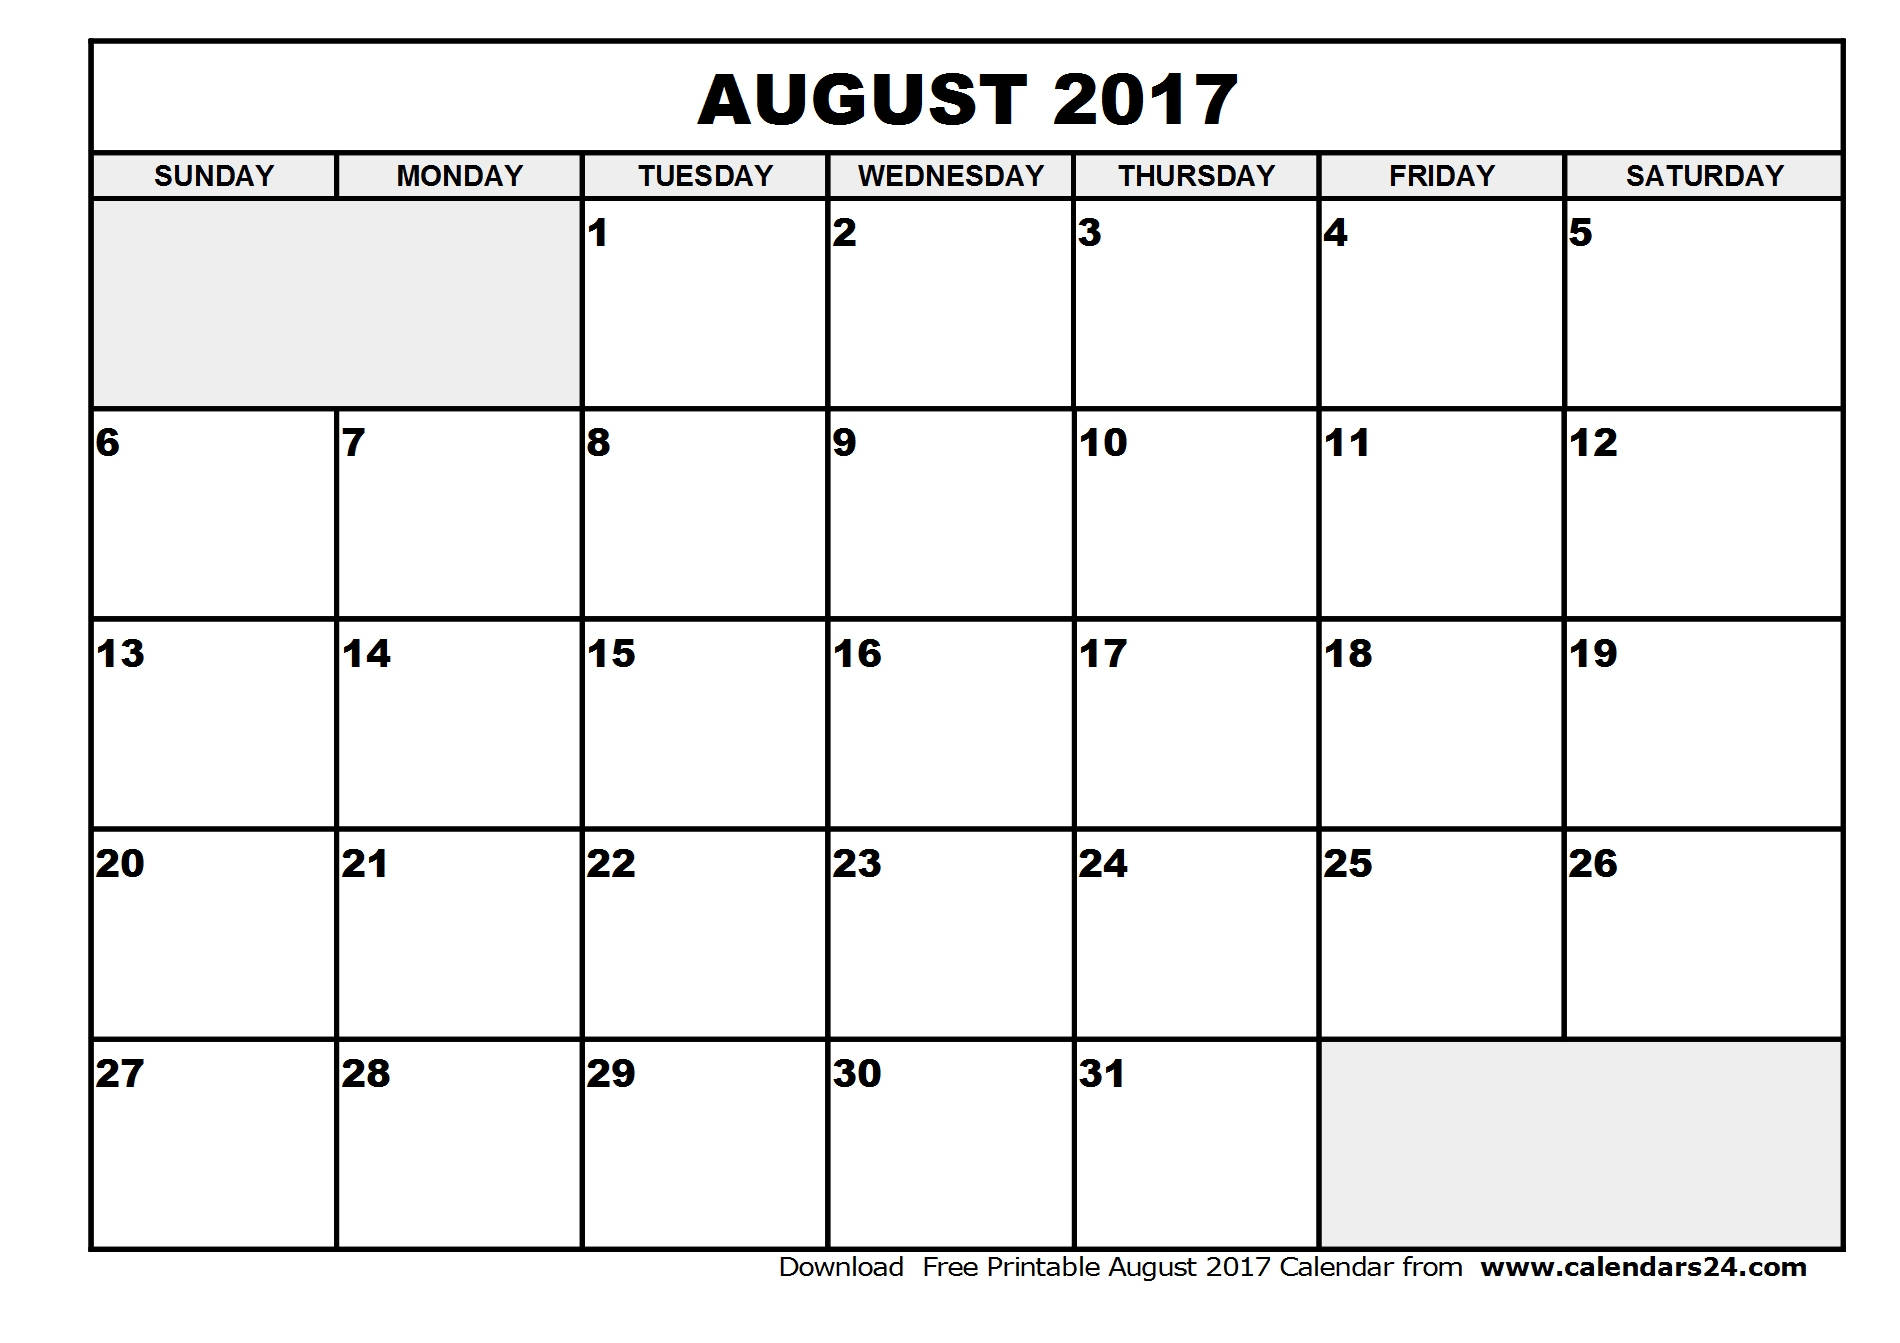 August 2017 Calendar & September 2017 Calendar